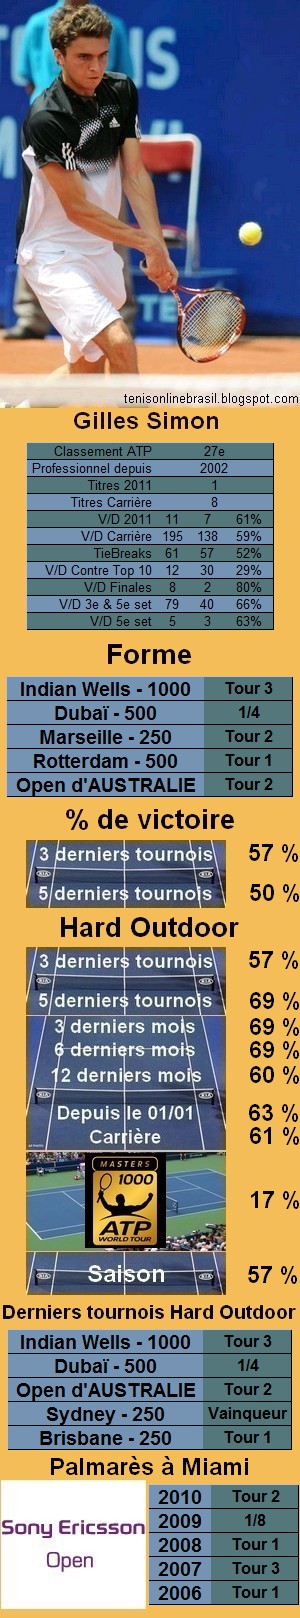 Les statistiques tennis de Gilles Simon pour le tournoi de Miami